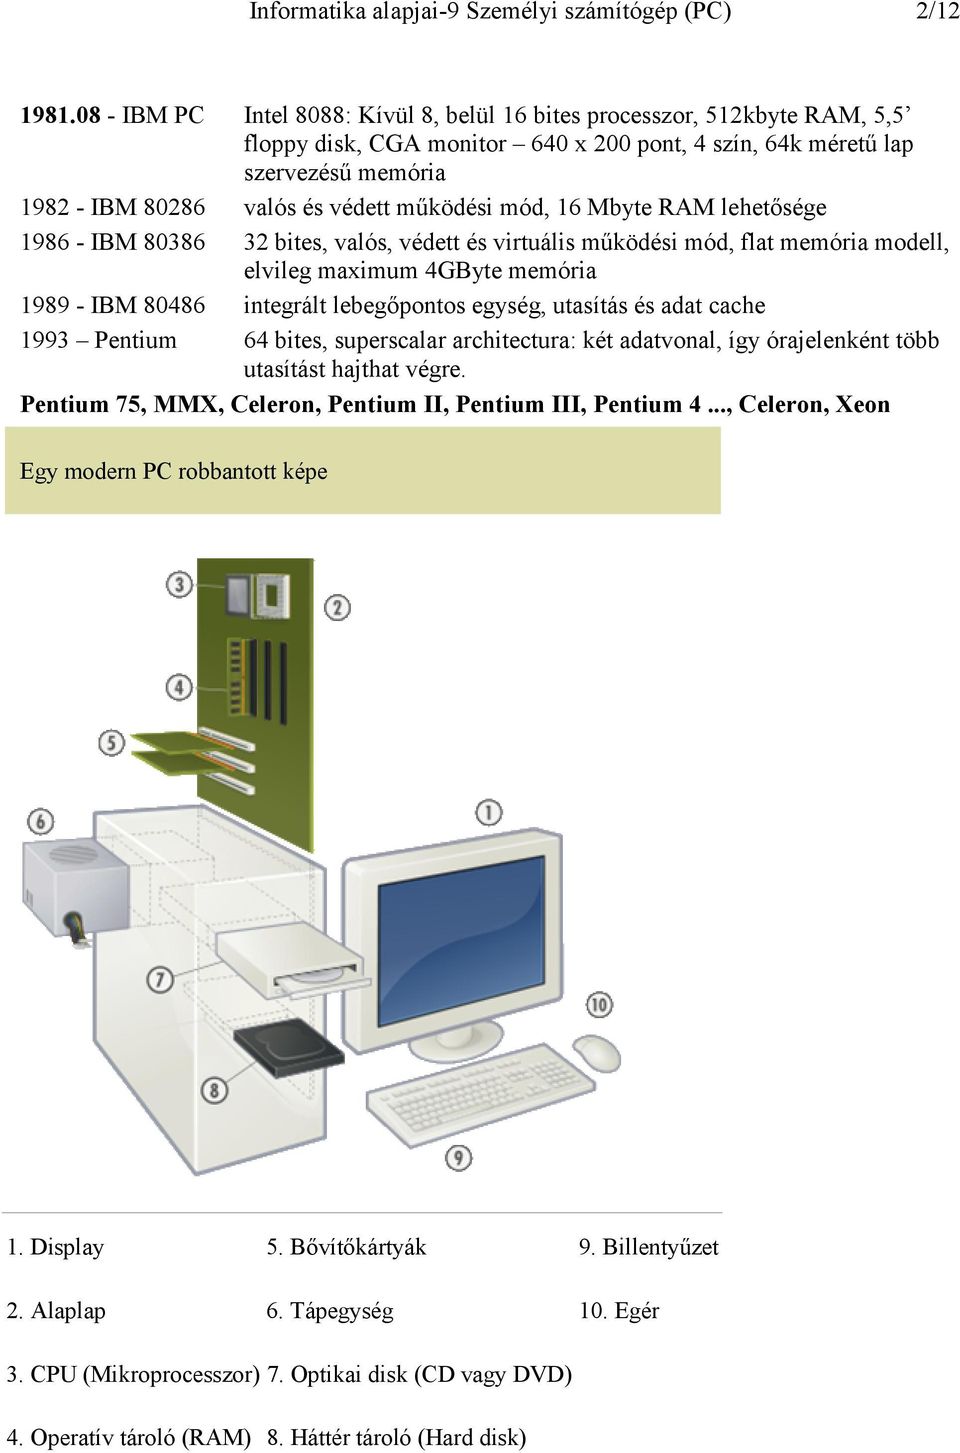 működési mód, 16 Mbyte RAM lehetősége 1986 - IBM 80386 32 bites, valós, védett és virtuális működési mód, flat memória modell, elvileg maximum 4GByte memória 1989 - IBM 80486 integrált lebegőpontos